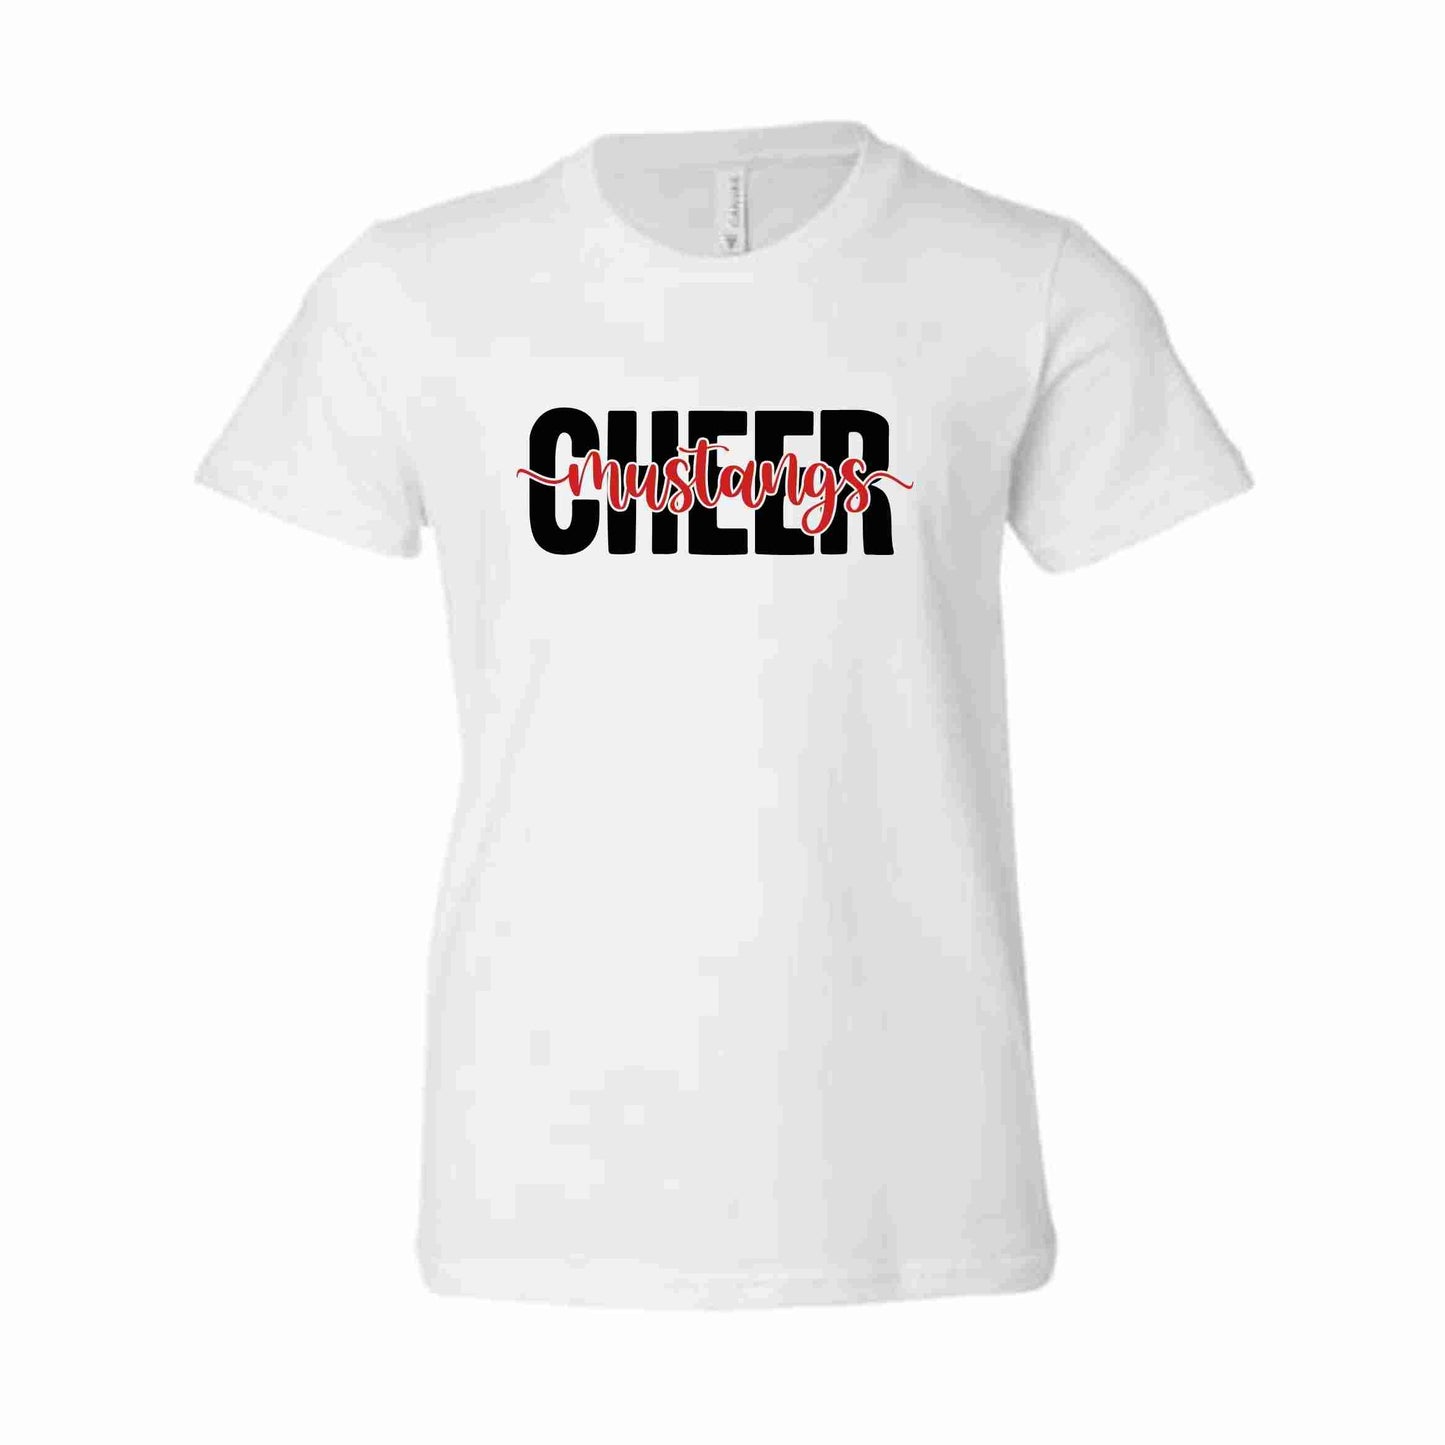 Cheer Design 1